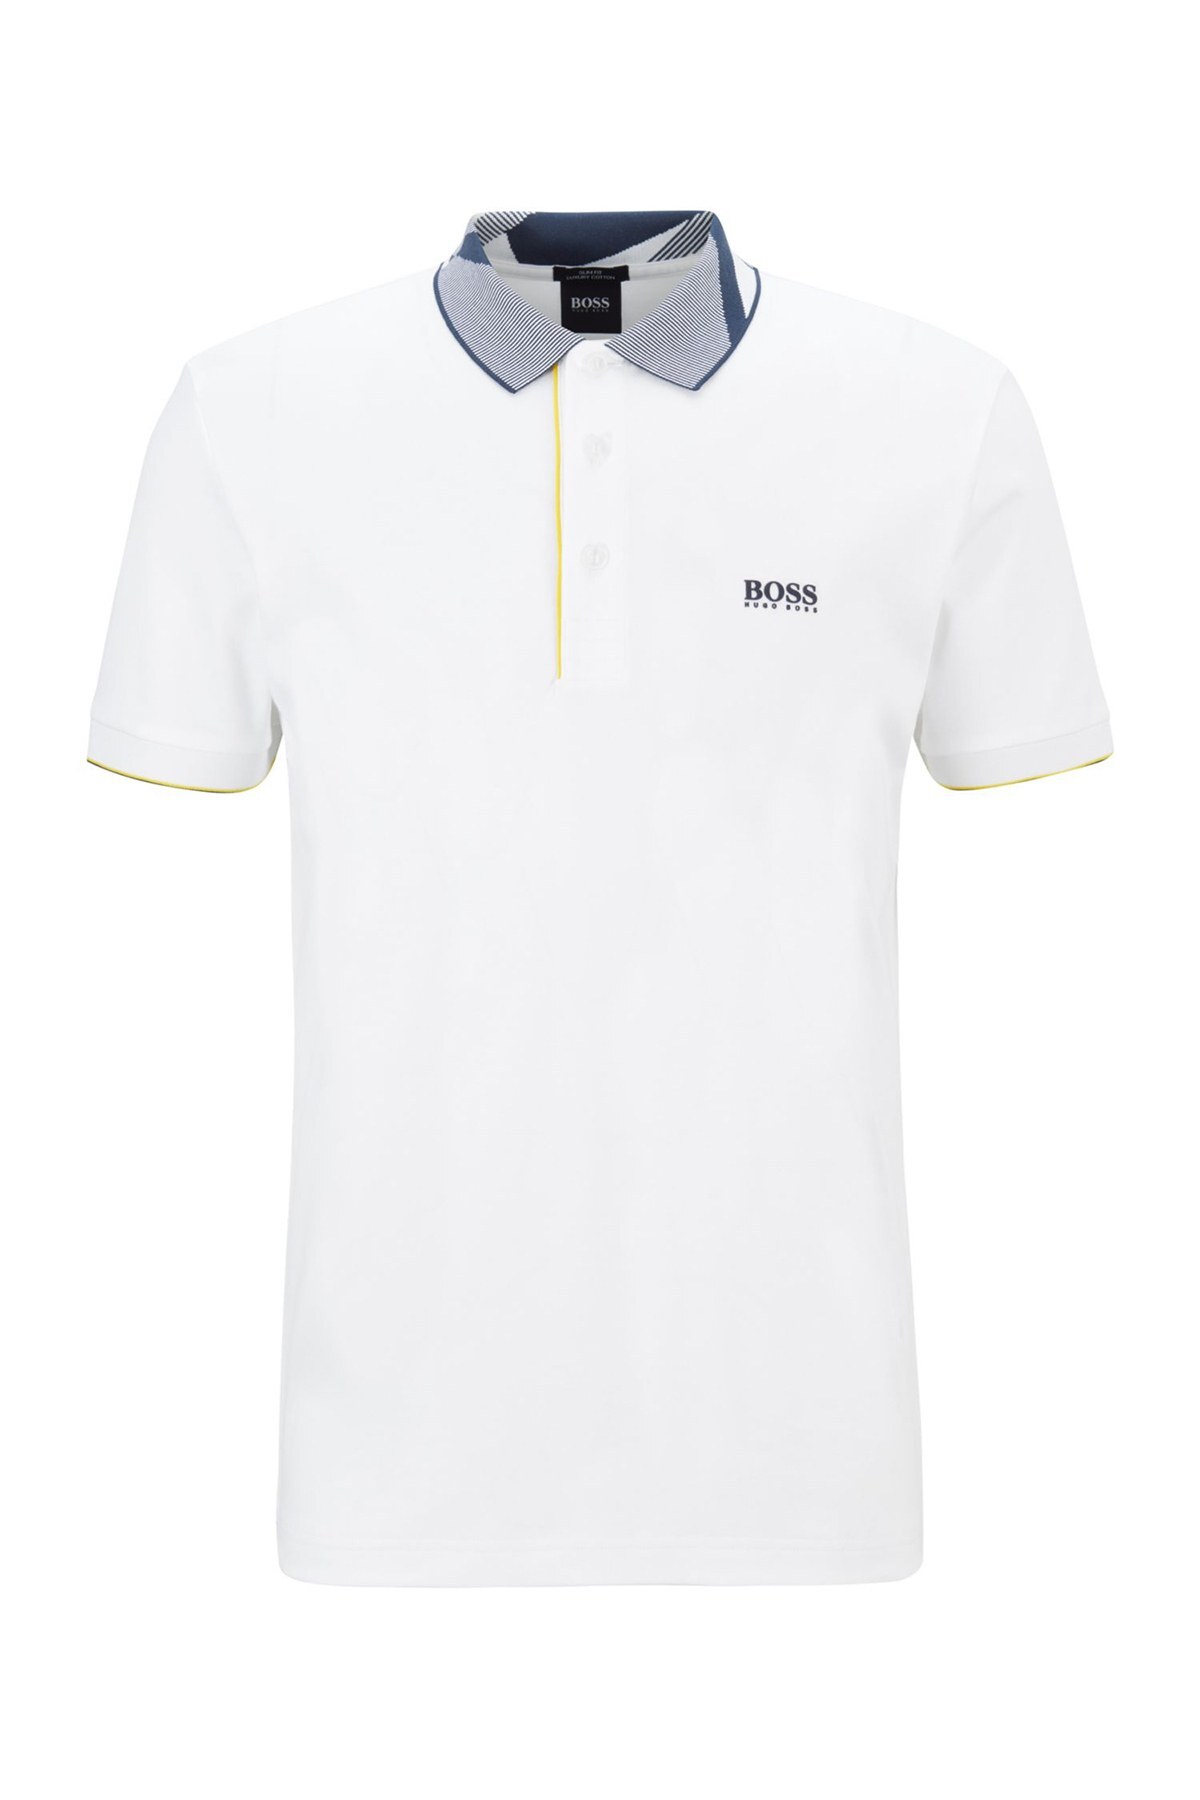 Hugo Boss % 100 Pamuklu Slim Fit T Shirt Erkek Polo 50448655 100 BEYAZ